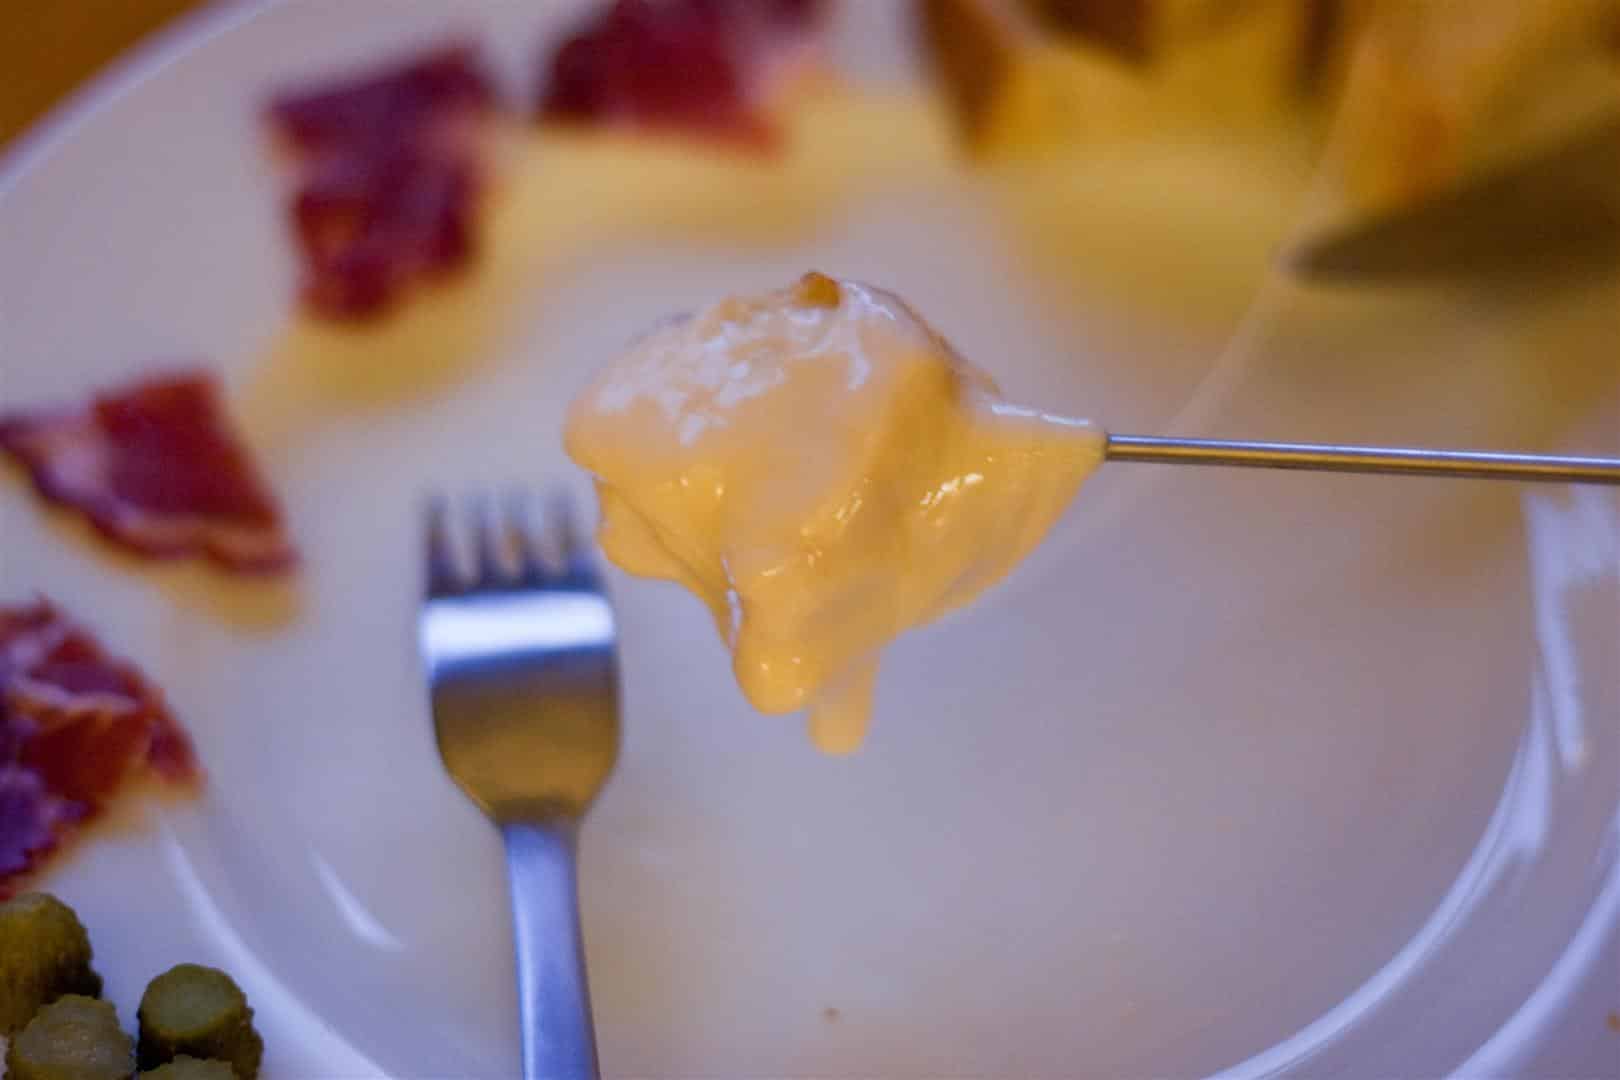 Cheese Fondue Savoyarde - Taste of Savoie